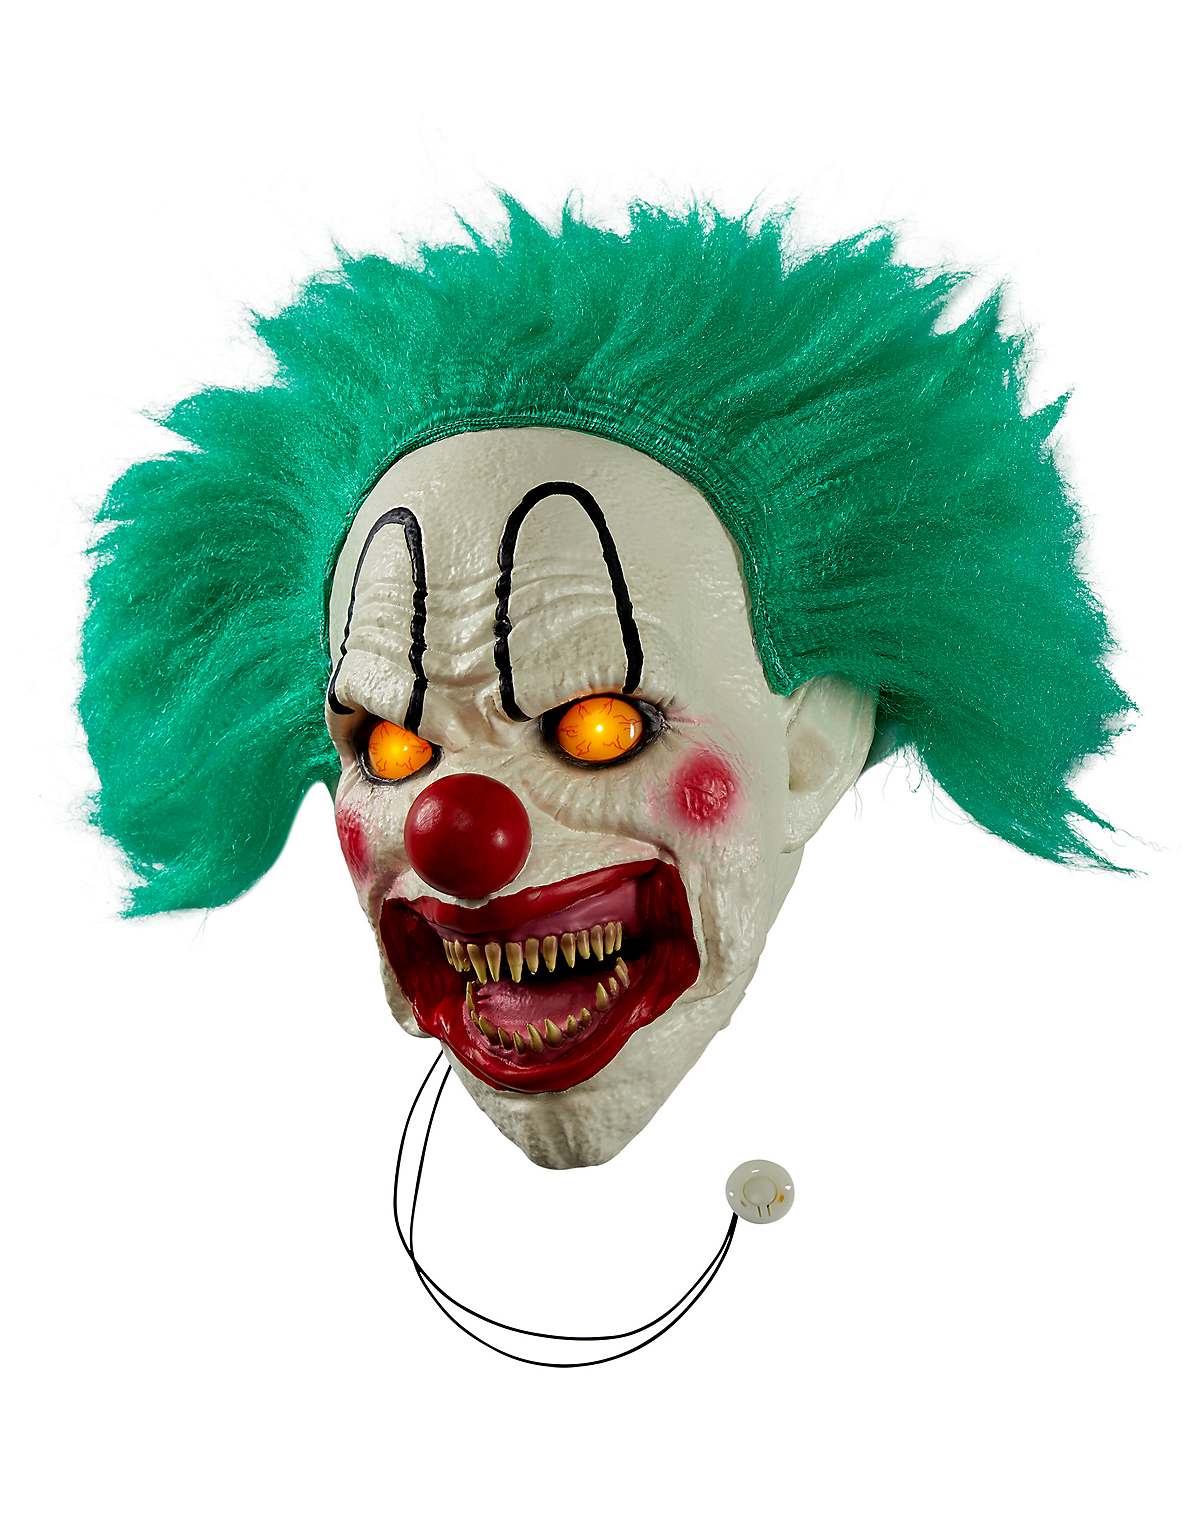 12-inch light-up evil talking clown door knocker decoration